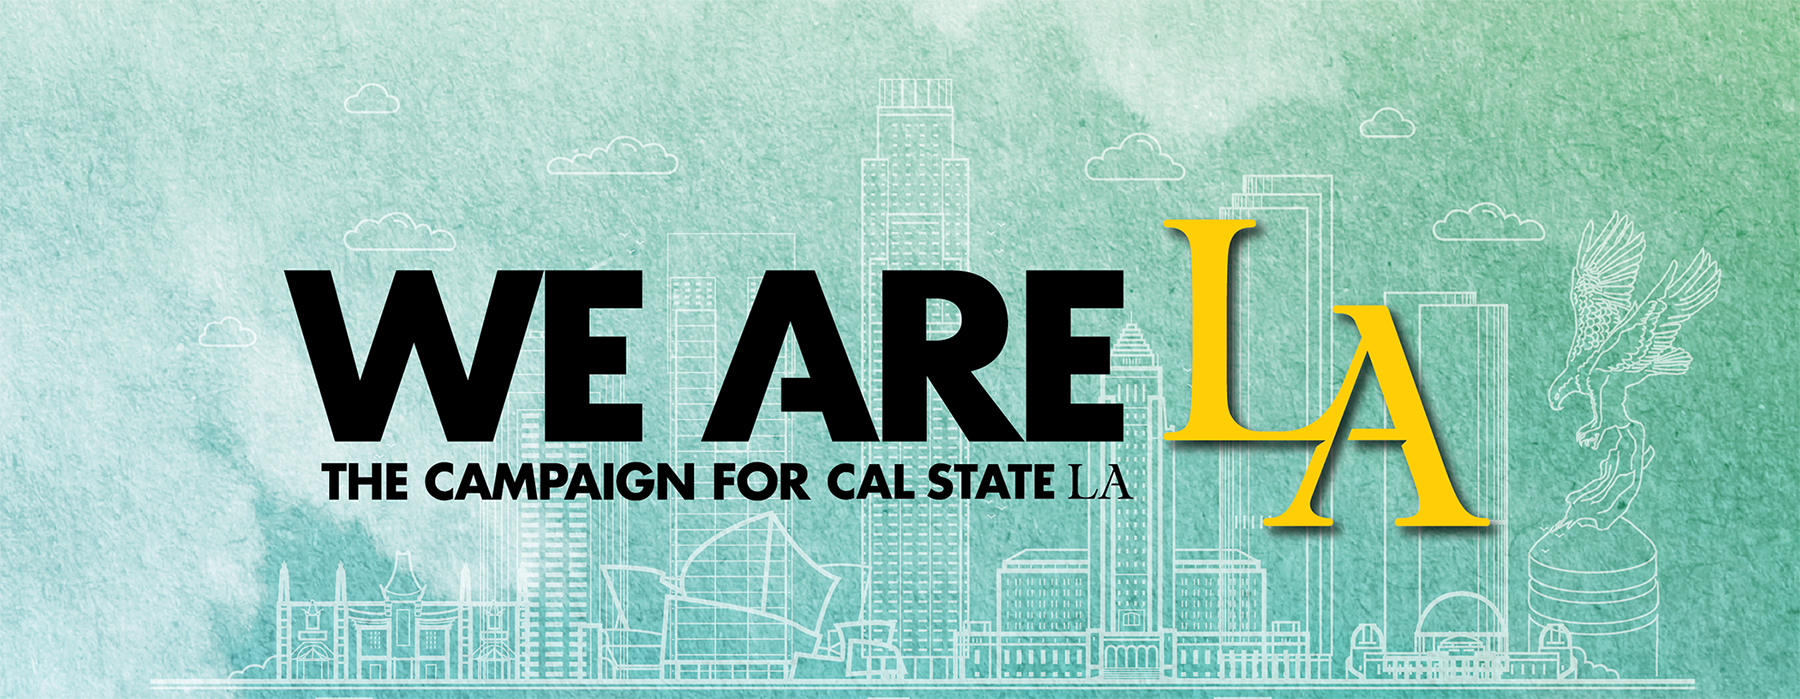 We are LA: The Campaign for Cal State LA